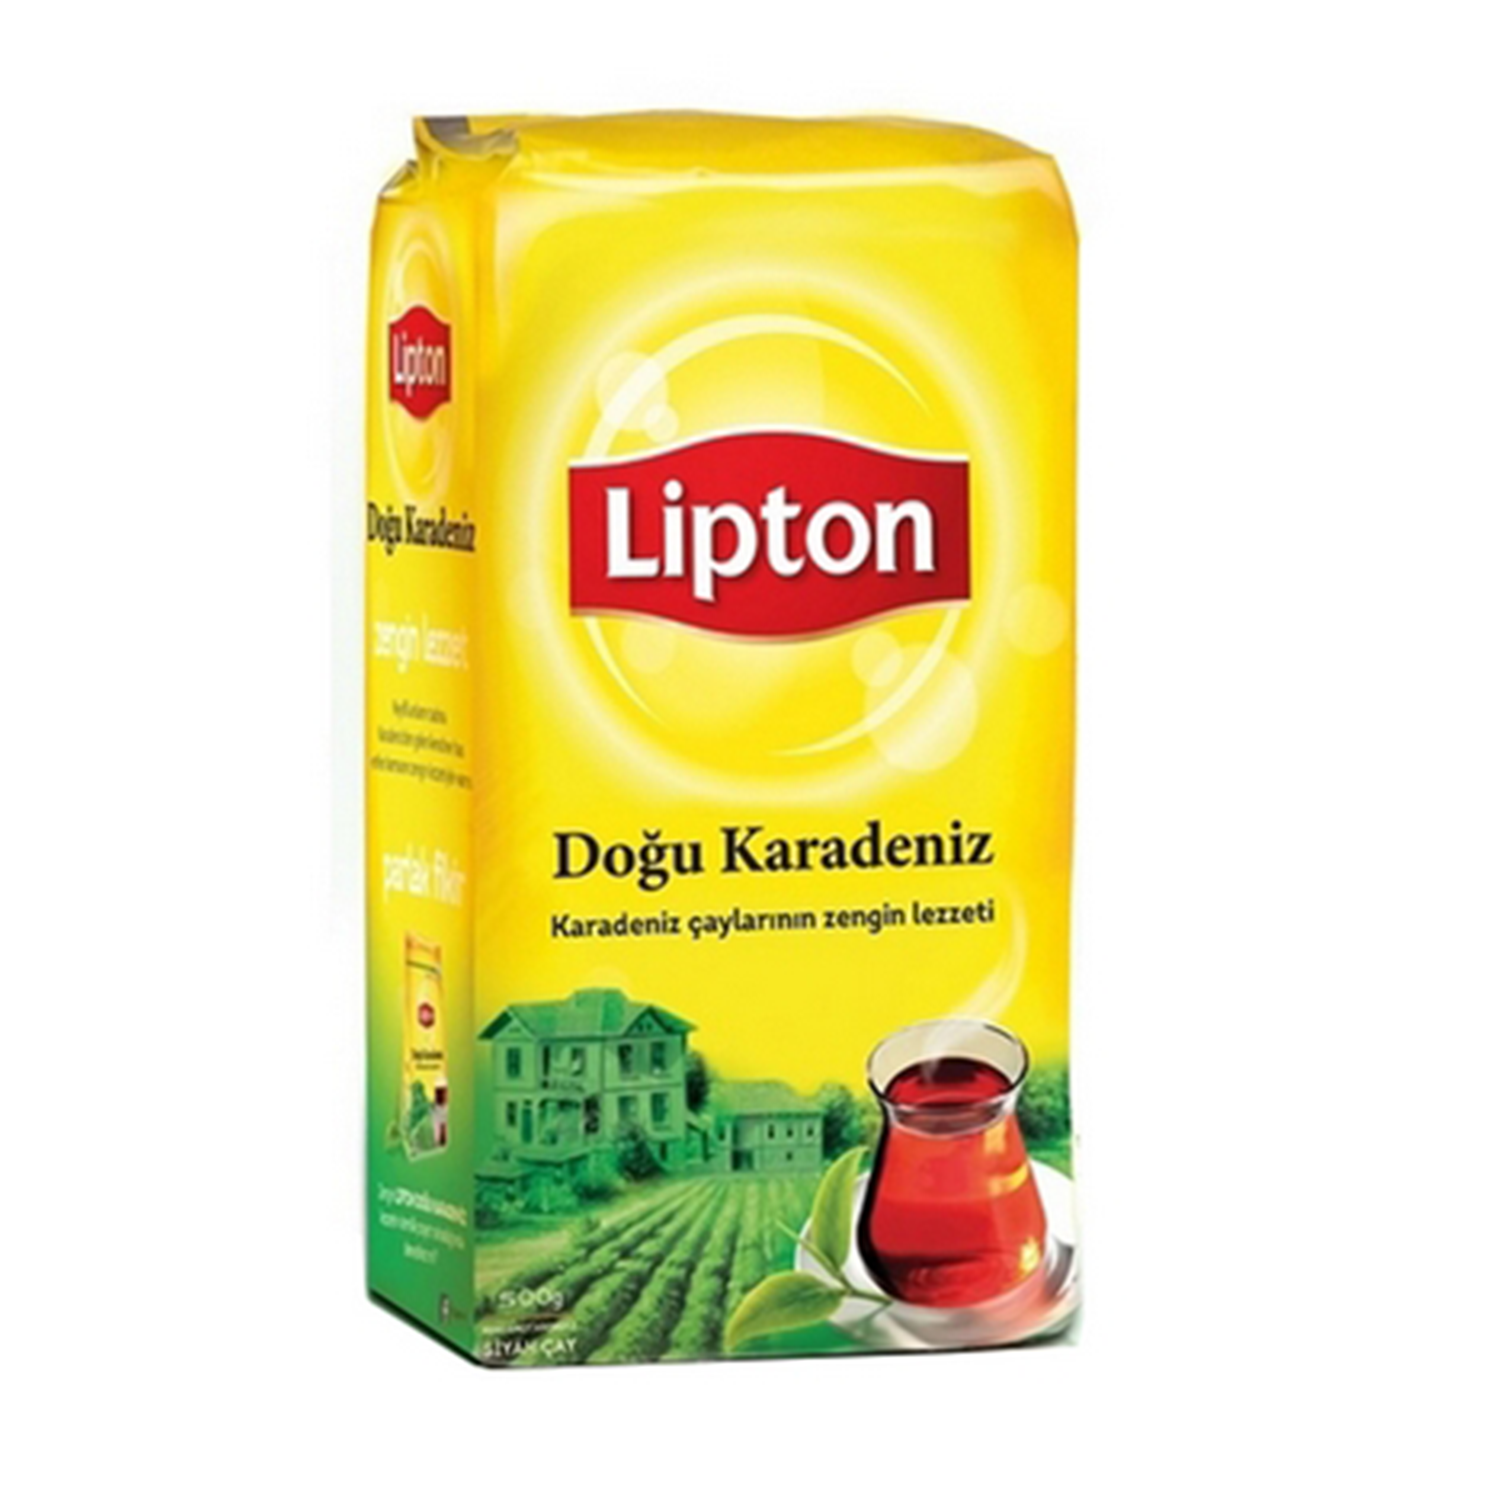 Lipton Doğu Karadeniz Çayı 500 GR